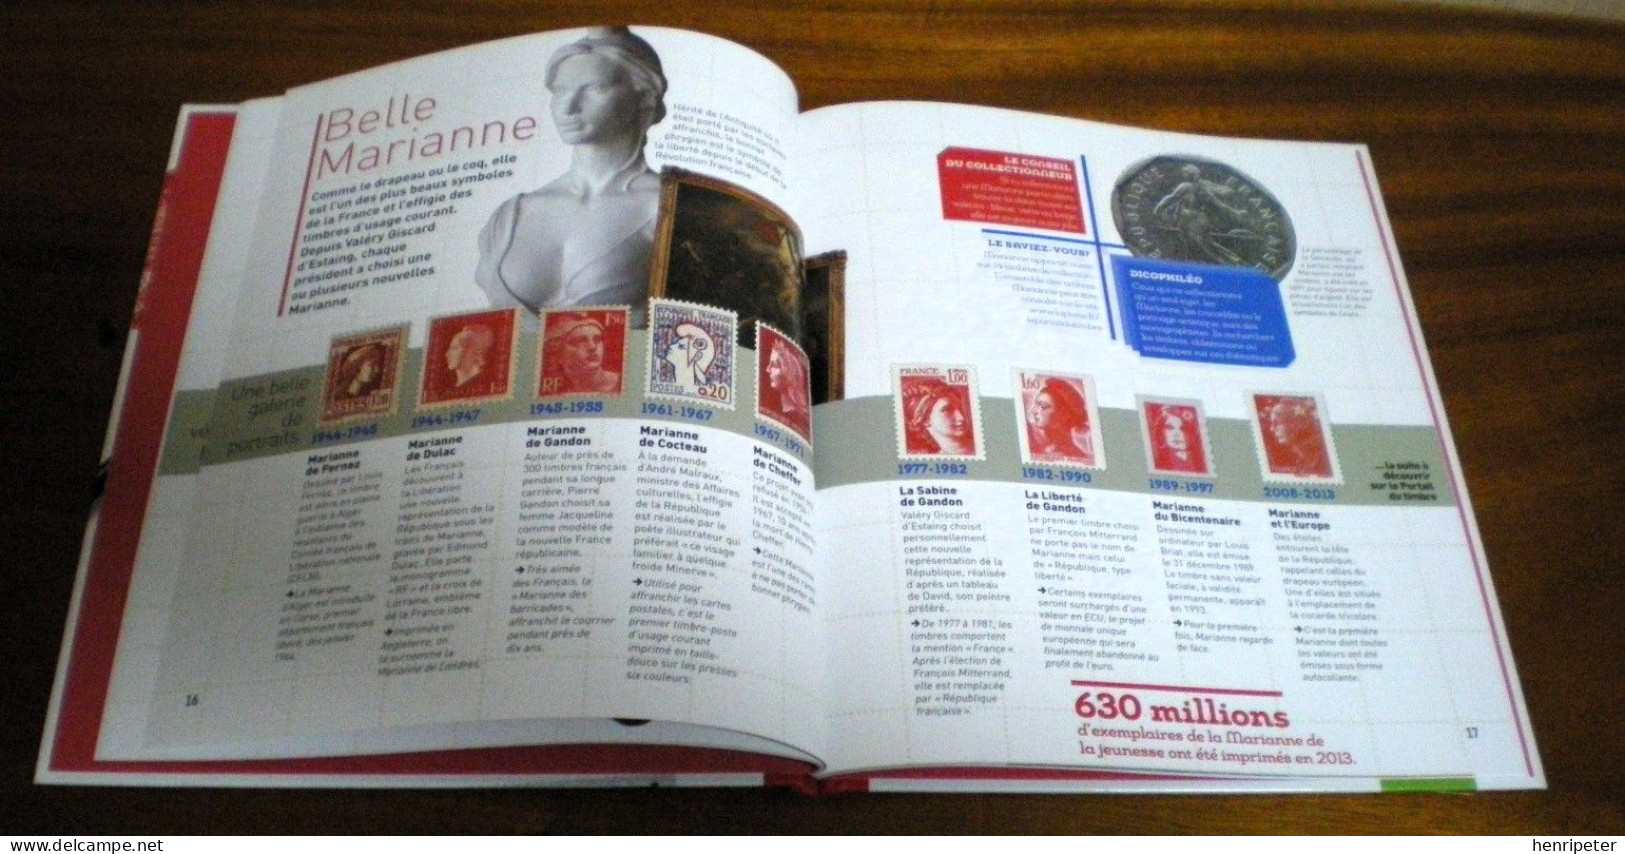 Le monde des timbres pour les philatélistes en herbe - GALLIMARD JEUNESSE - Livre neuf